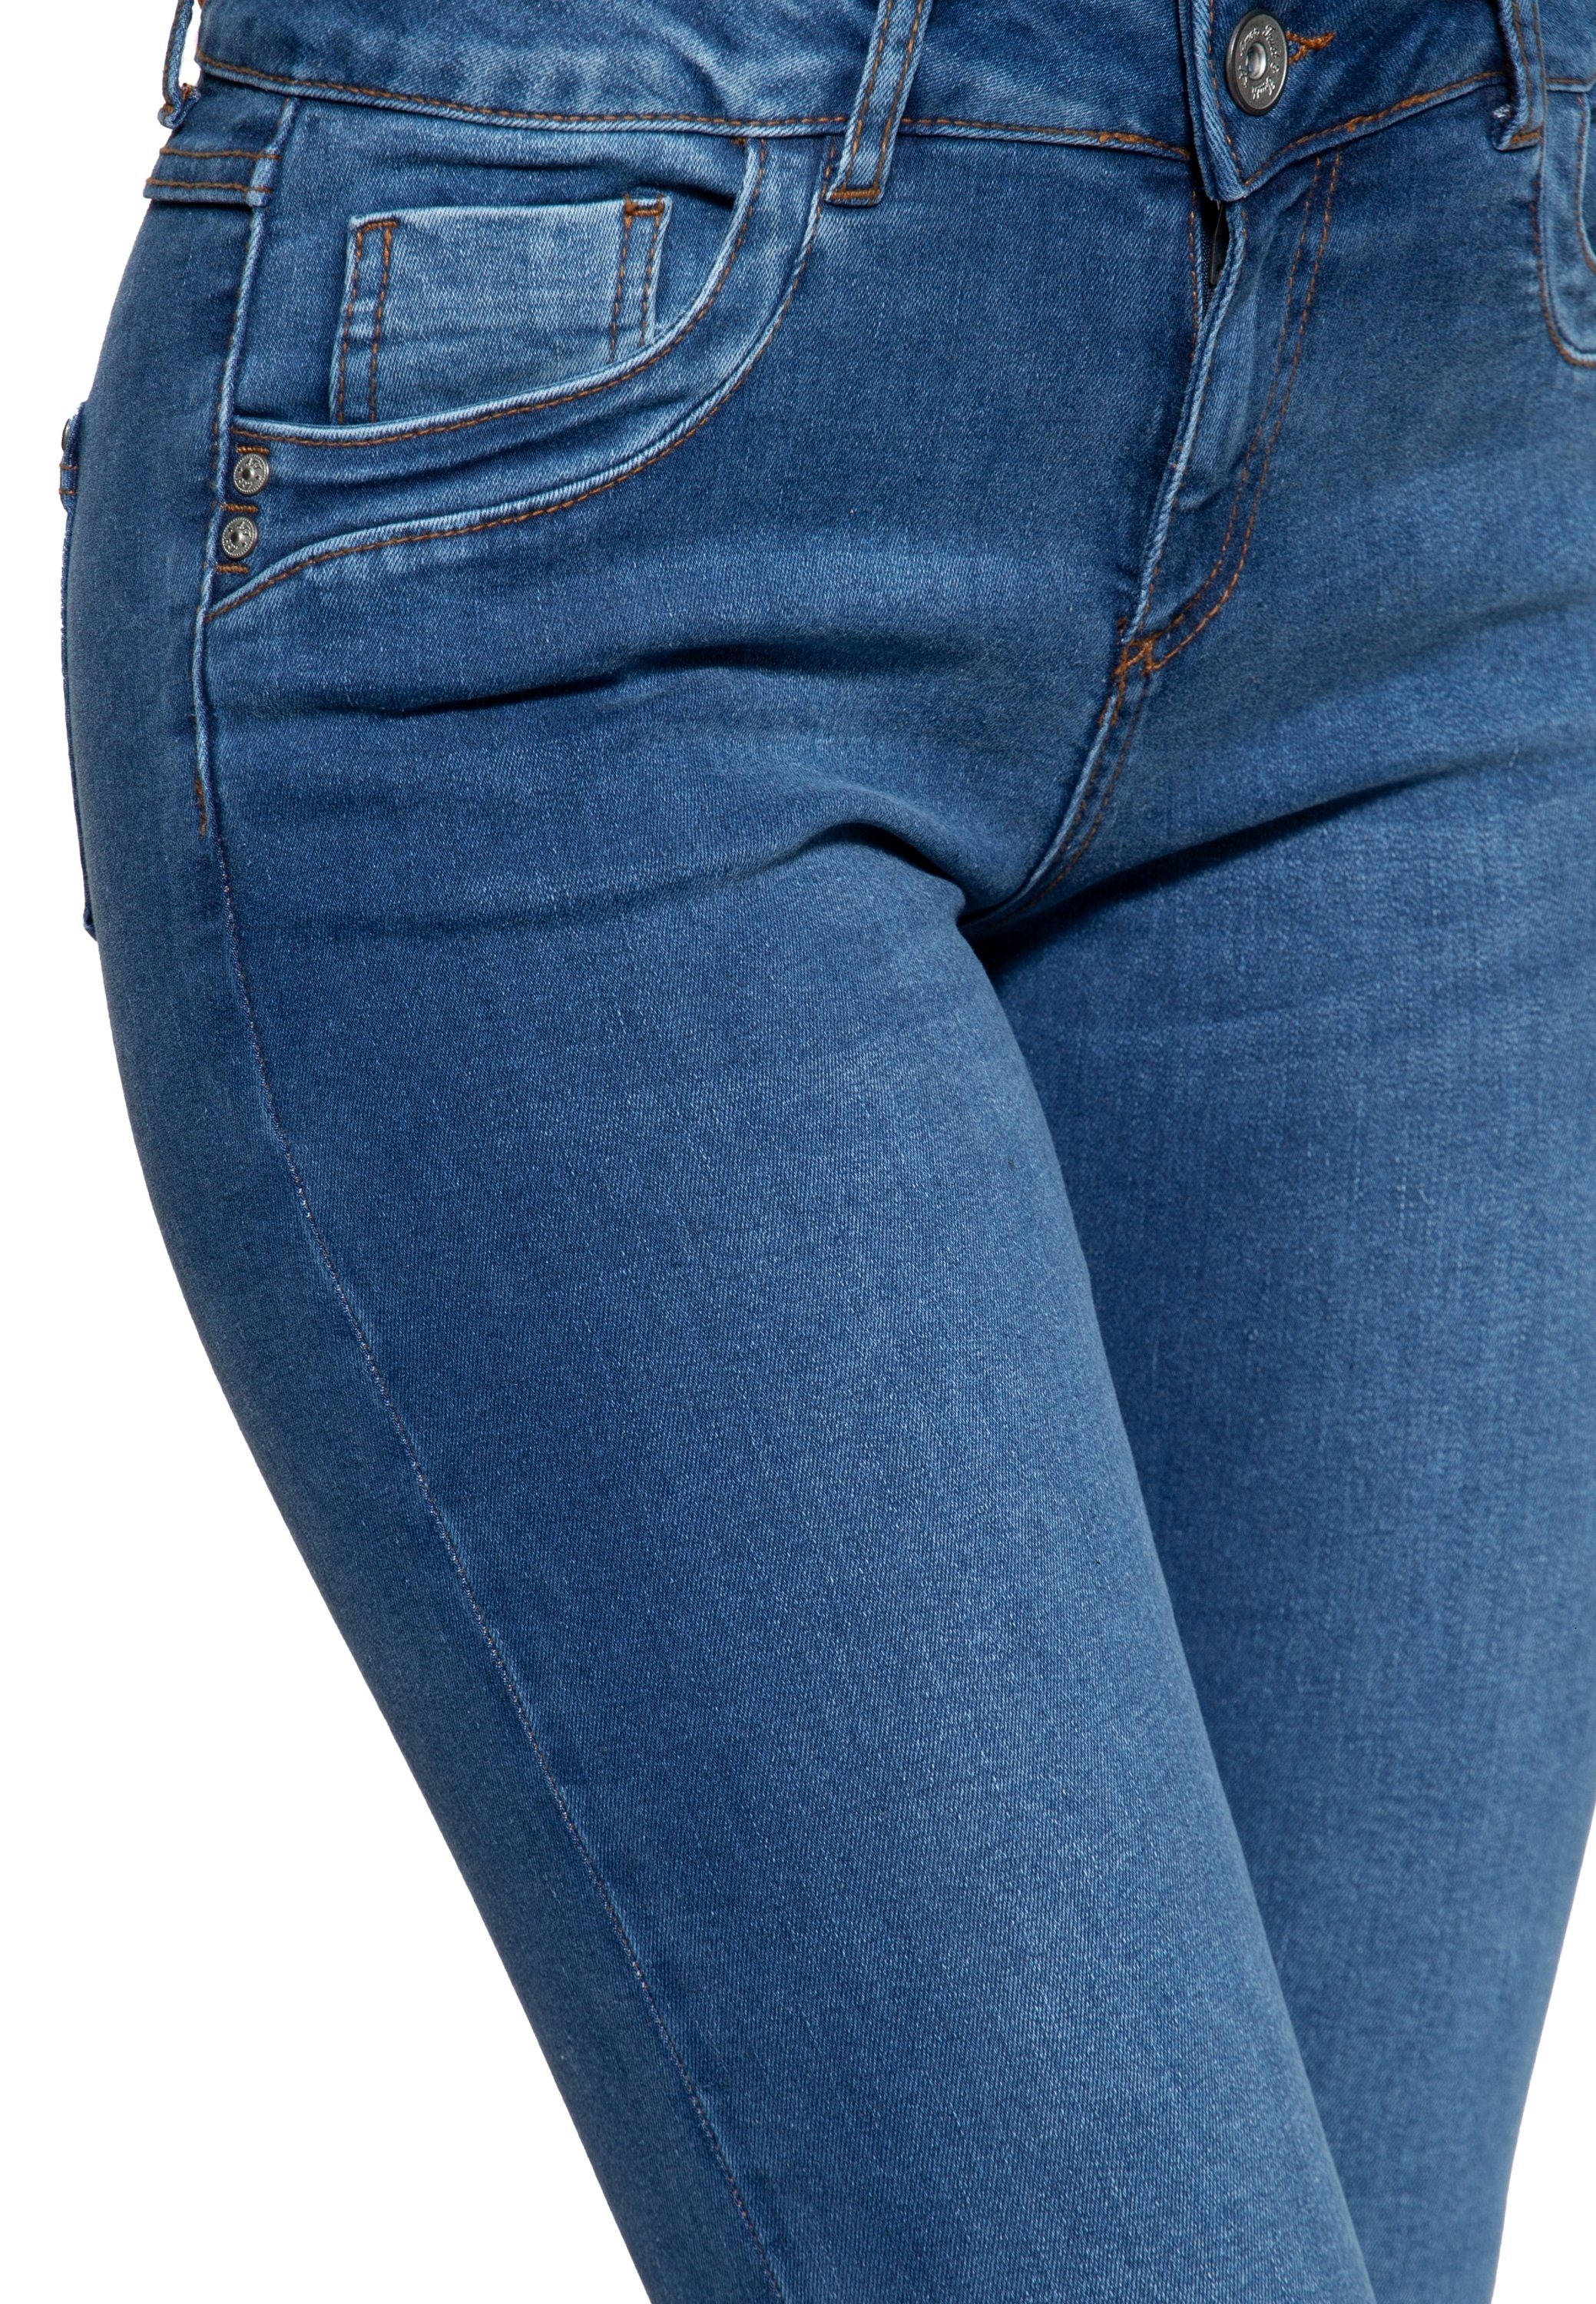 Damen Jeans ATT Jeans Slim-fit-Jeans Leoni Shape-Memory-Effekt